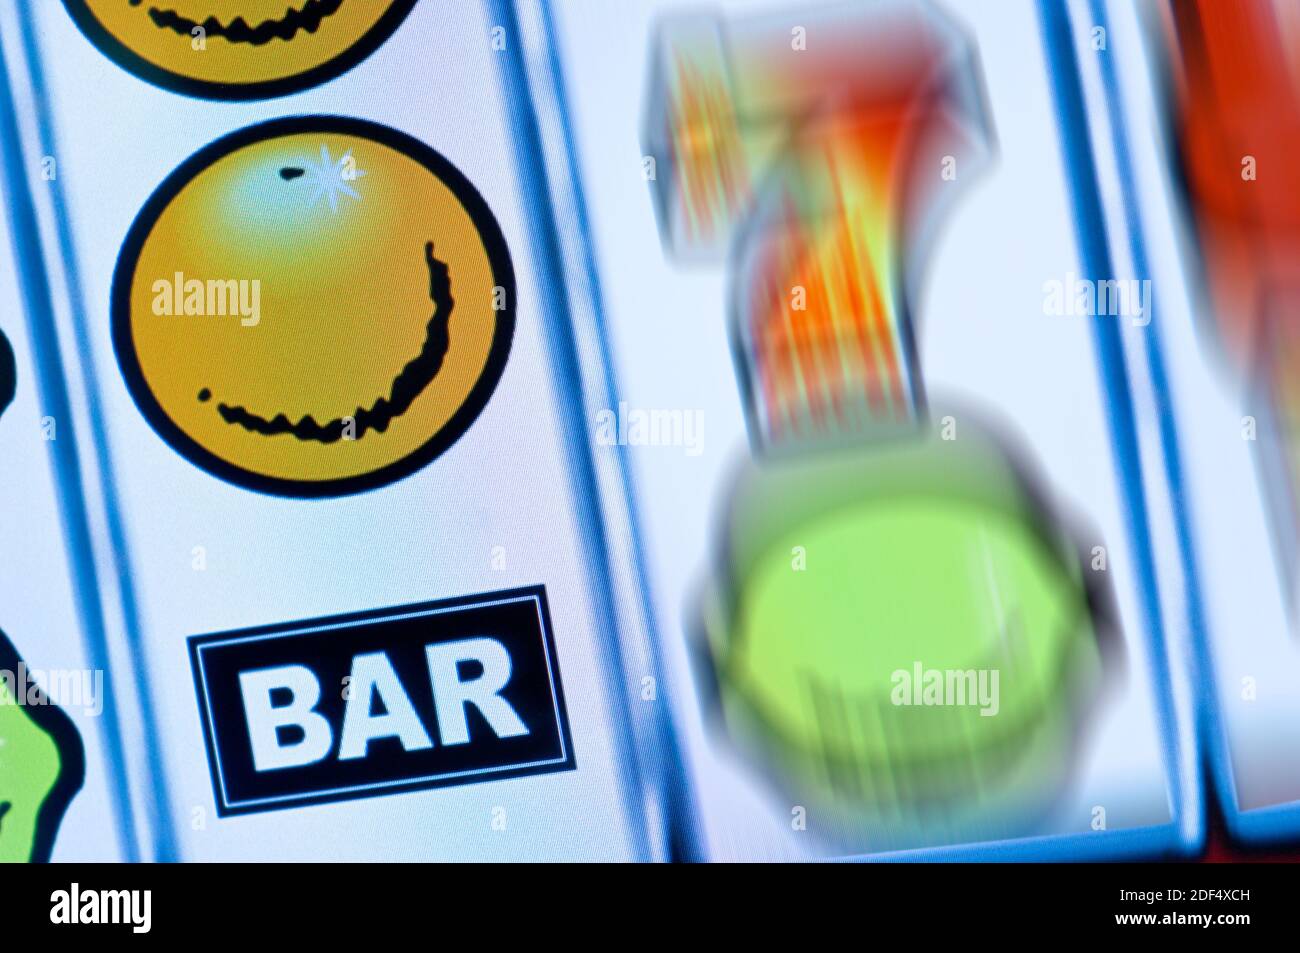 Ausschnitt eines Geldspielautomaten-Displays Stock Photo